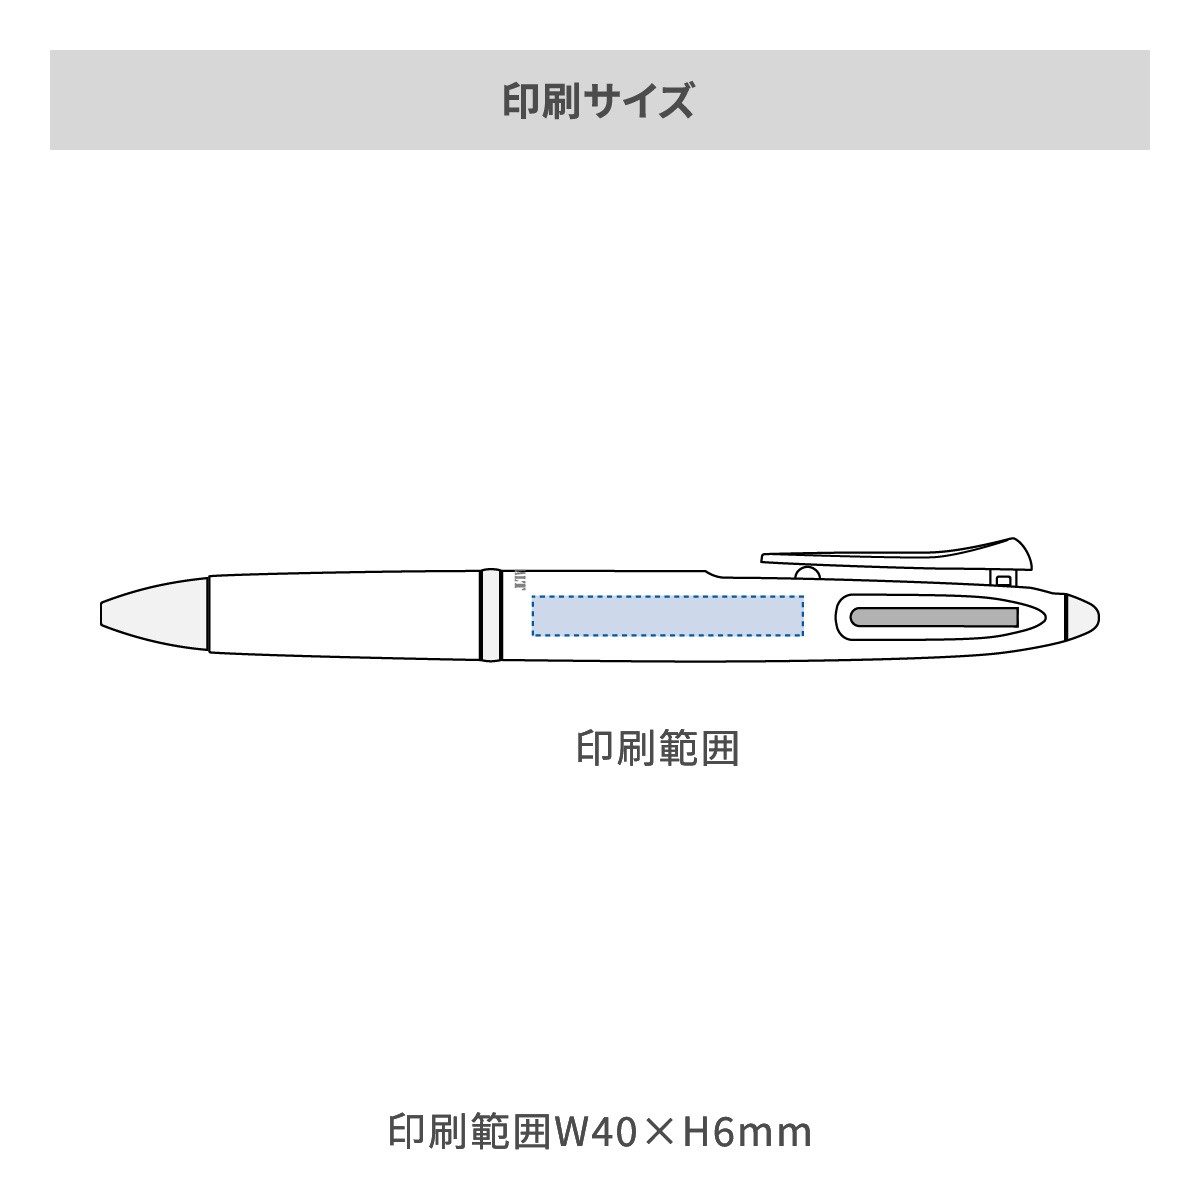 三菱鉛筆 ピュアモルト3機能ペン 0.7mmの名入れ範囲